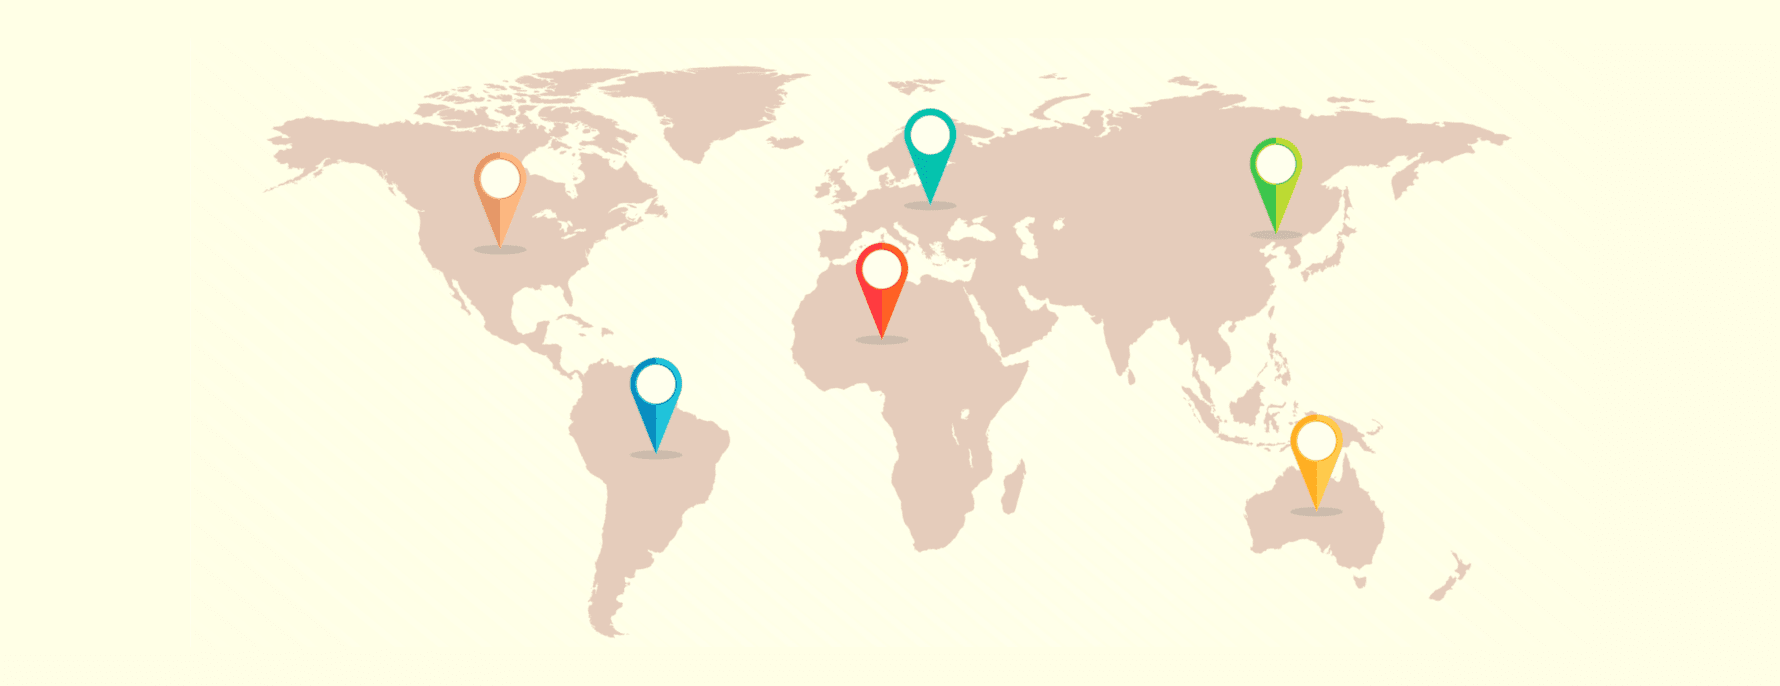 さまざまなVPN管轄区域を描いた世界地図